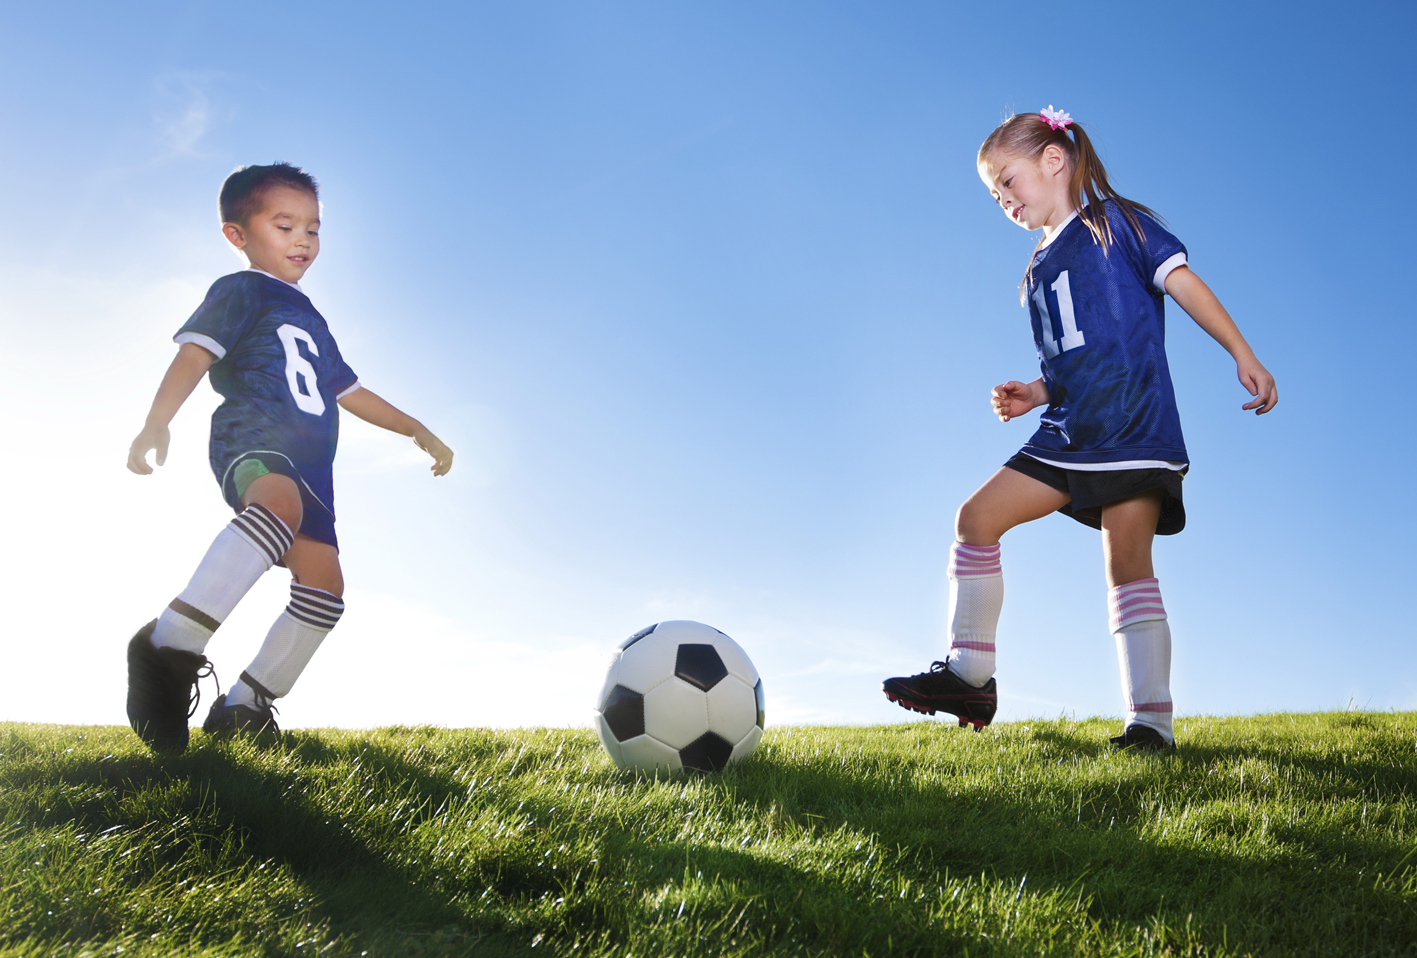 Inilah 4 Manfaat Melakukan Olahraga Secara Rutin Bagi Anak Anak